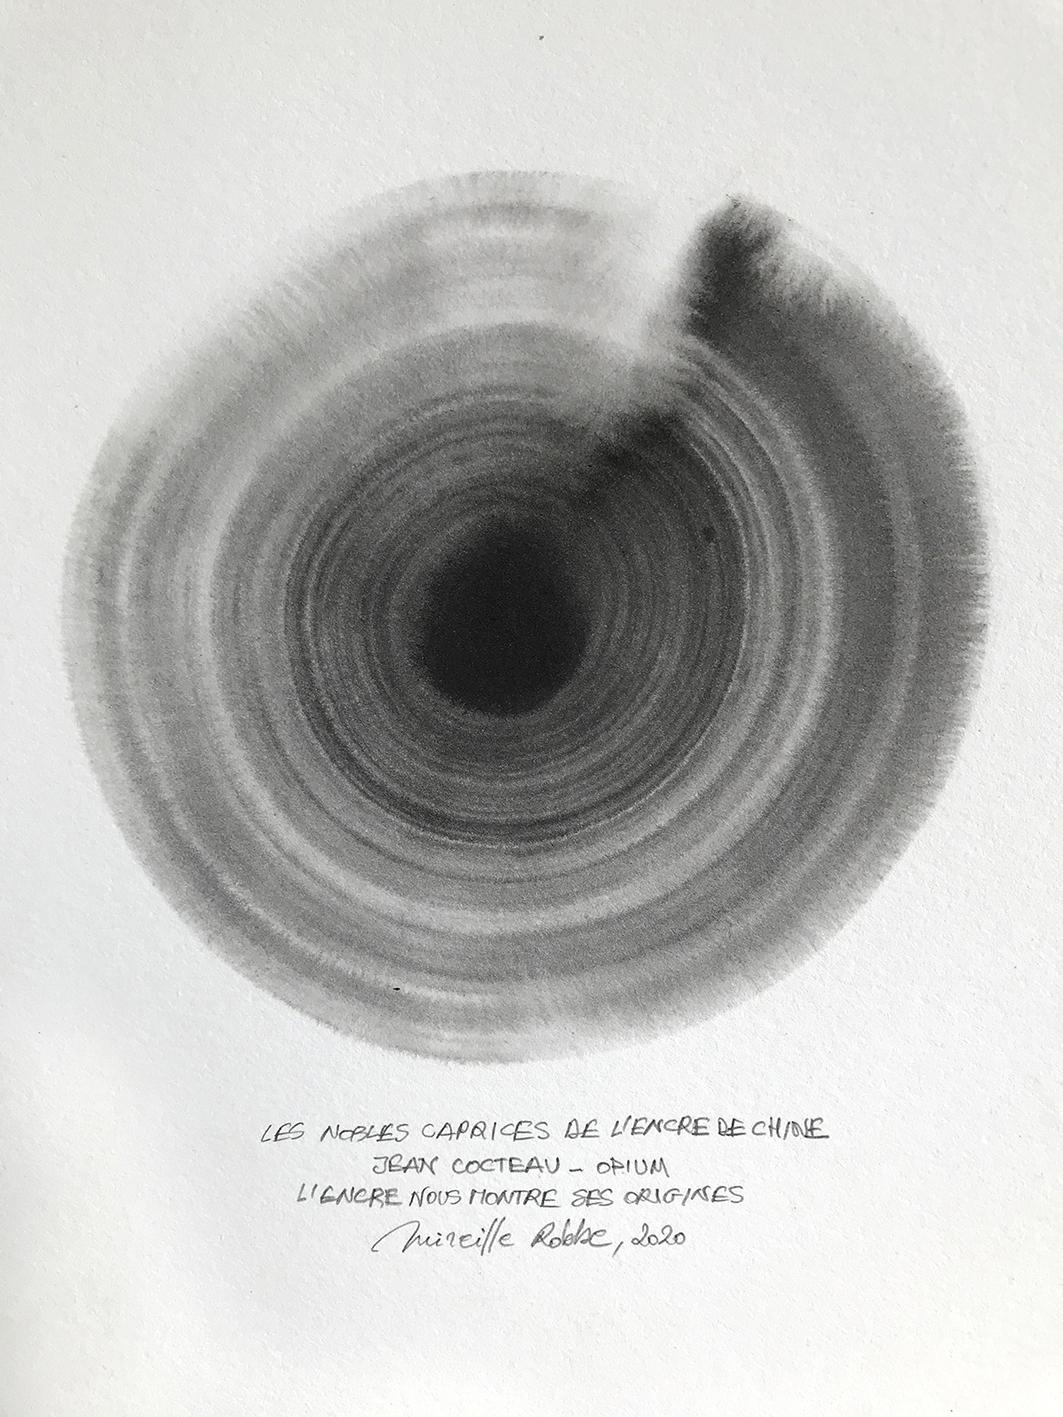 Mireille Robbe, Nobles Caprices, Oost Indische inkt op papier, 2020, 30 x 22 cm